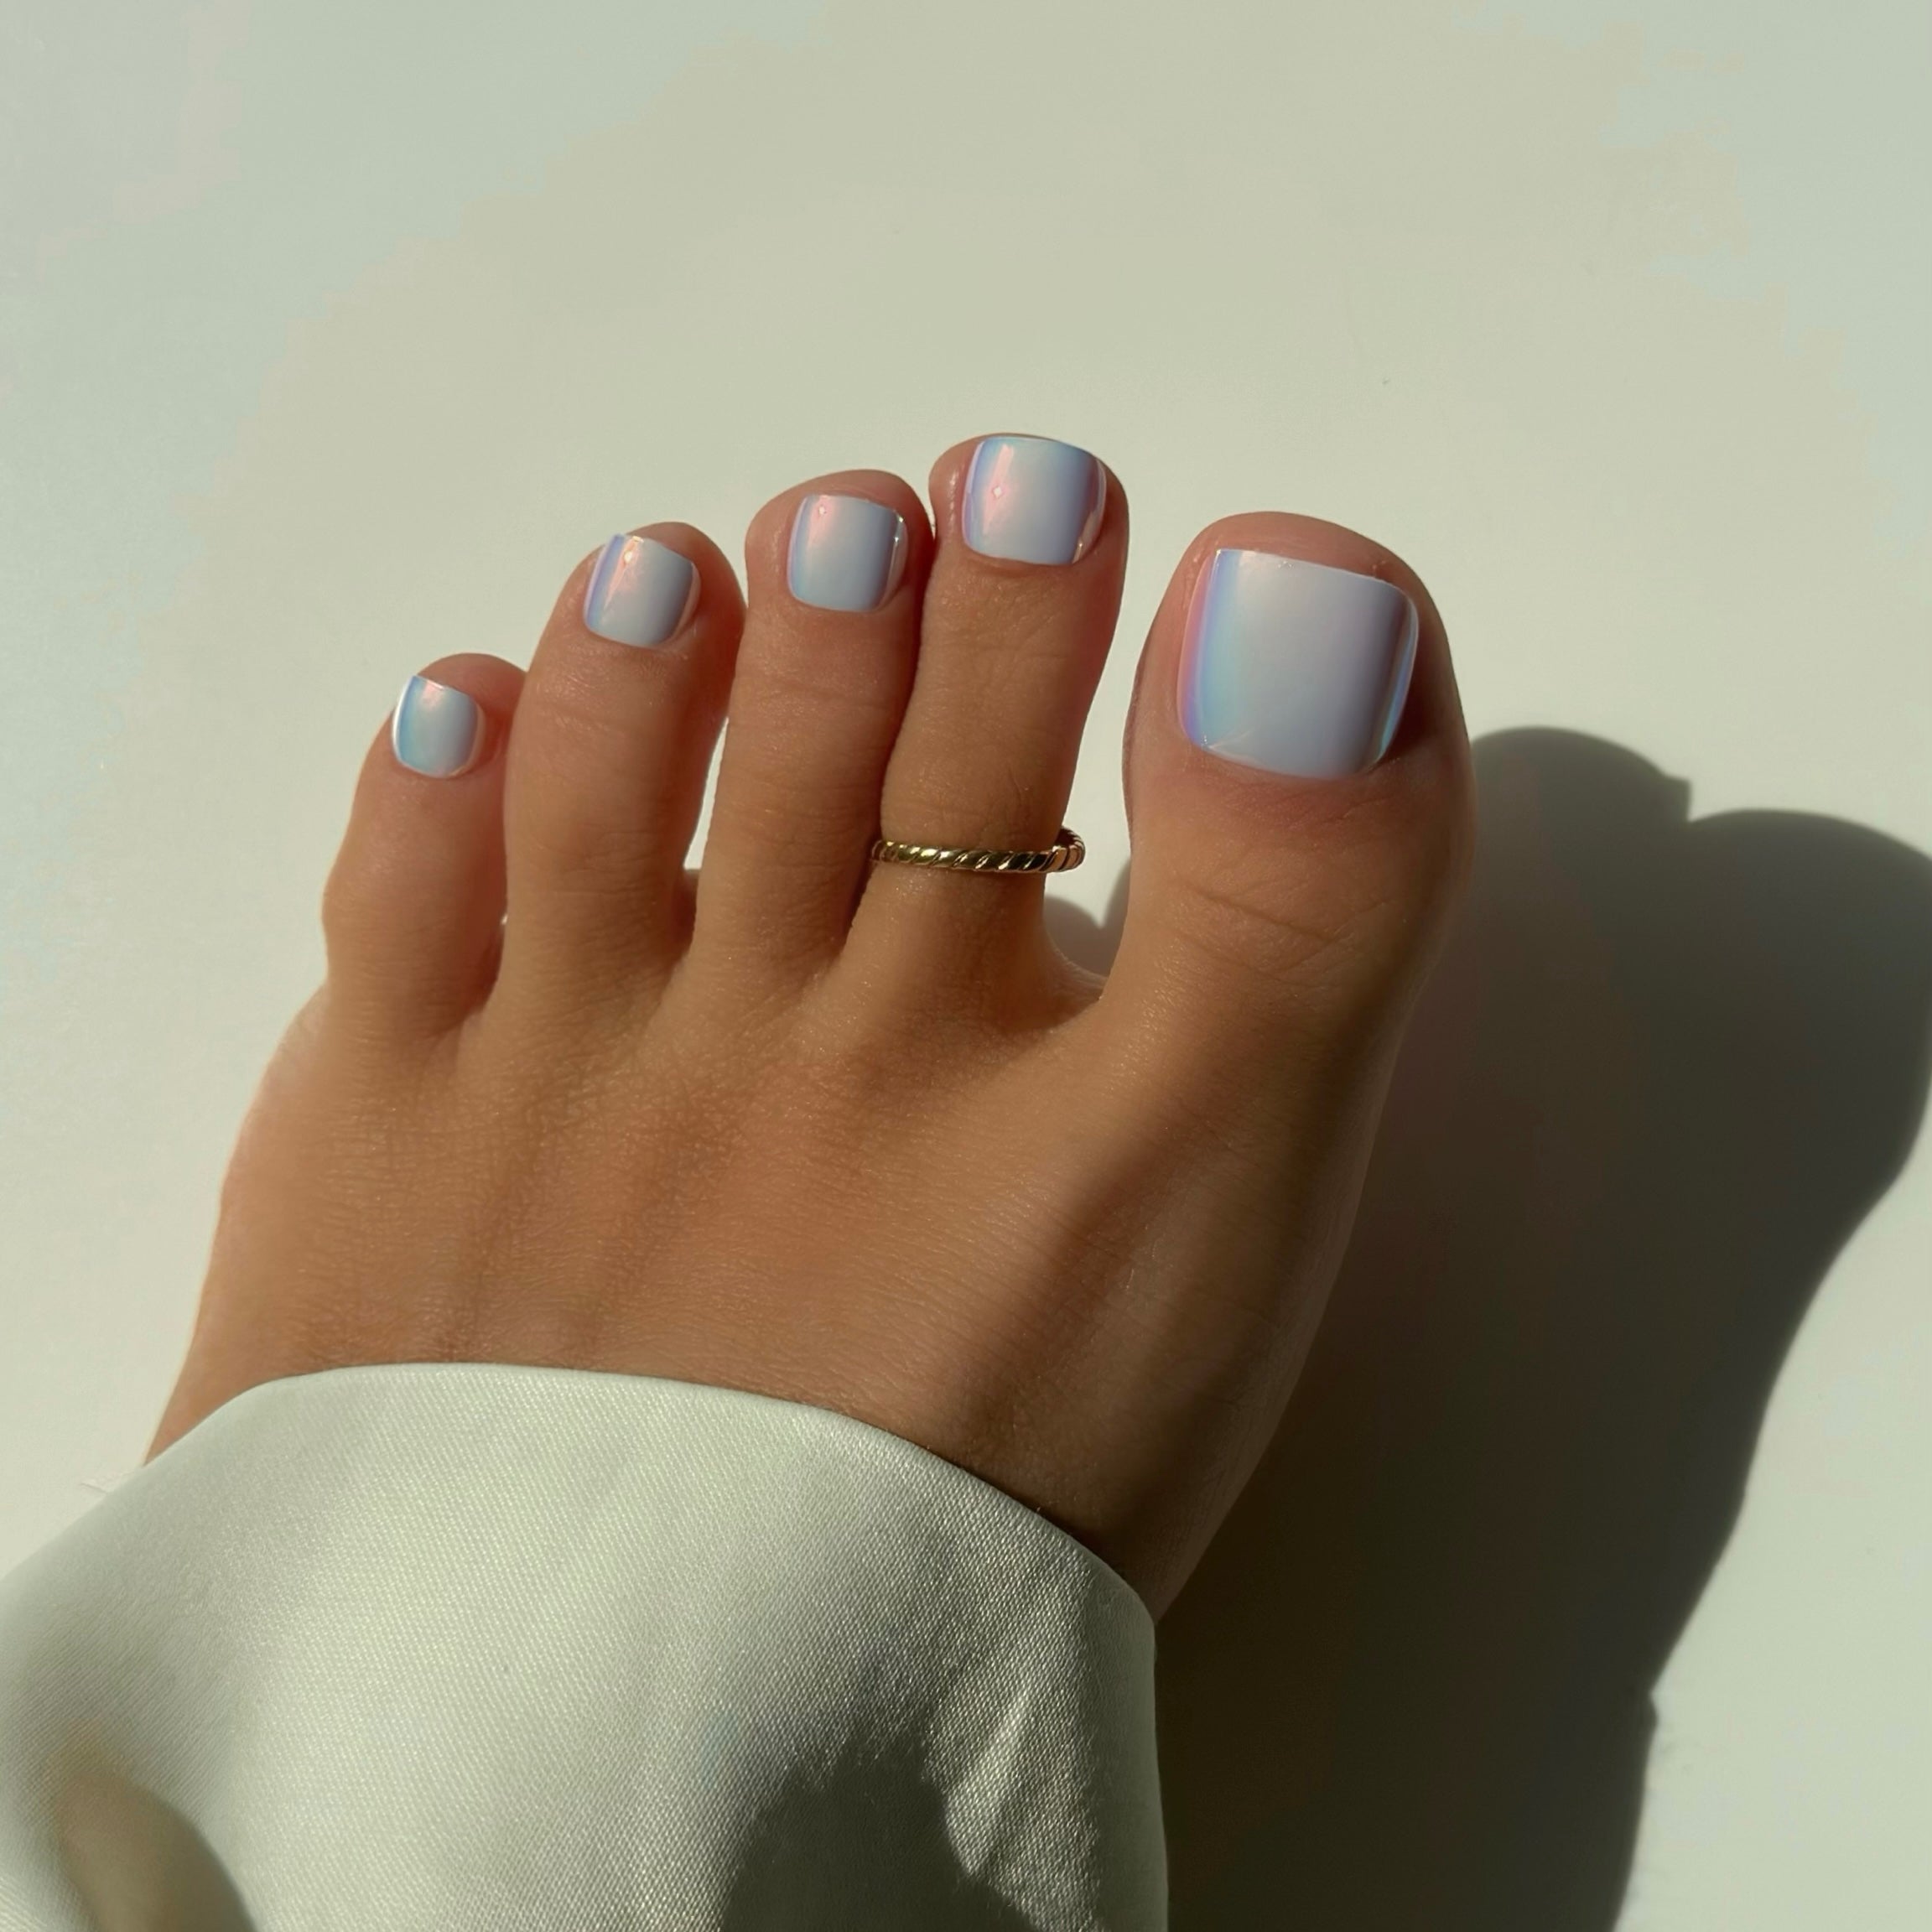 Holographic Toe Press On Nails (Doppelter Inhalt)